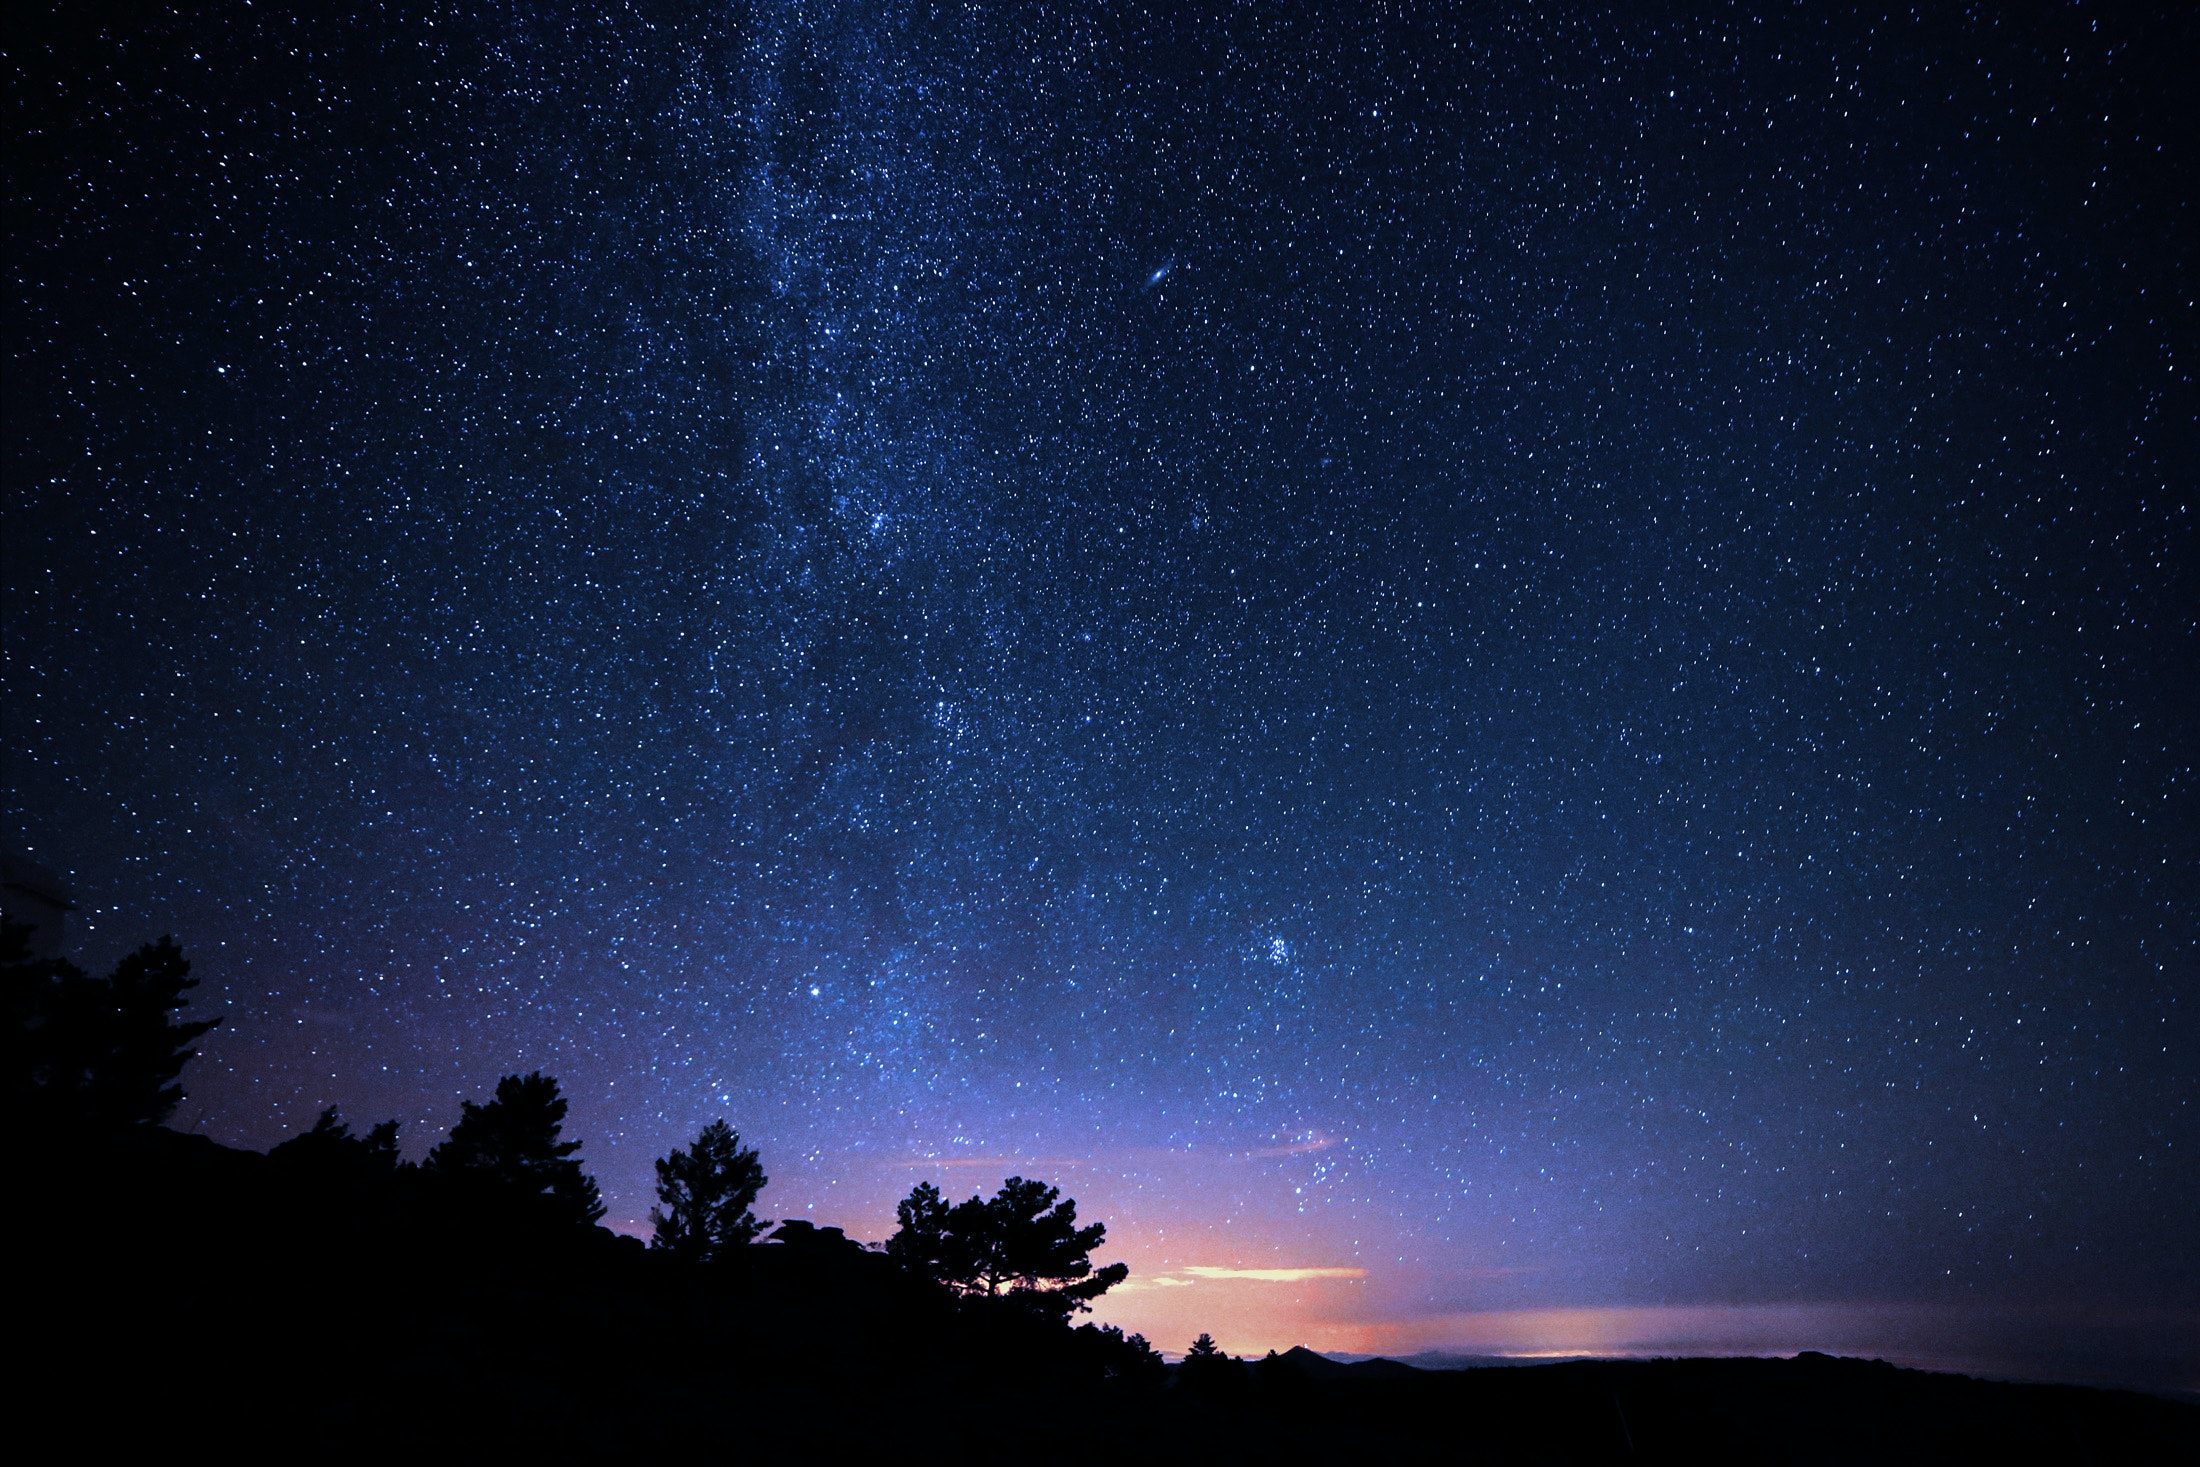 500 Hình Ảnh Bầu Trời Đêm Đầy Sao Đẹp Lung Linh, Nhìn Cực Thích - Bạn đang tìm kiếm những bức ảnh tuyệt vời về không gian? Những hình ảnh bầu trời đêm đầy sao này chắc chắn sẽ khiến bạn mê mẩn. Với danh sách 500 hình ảnh đẹp lung linh, bạn chắc chắn sẽ có những gì mình cần để thư giãn.